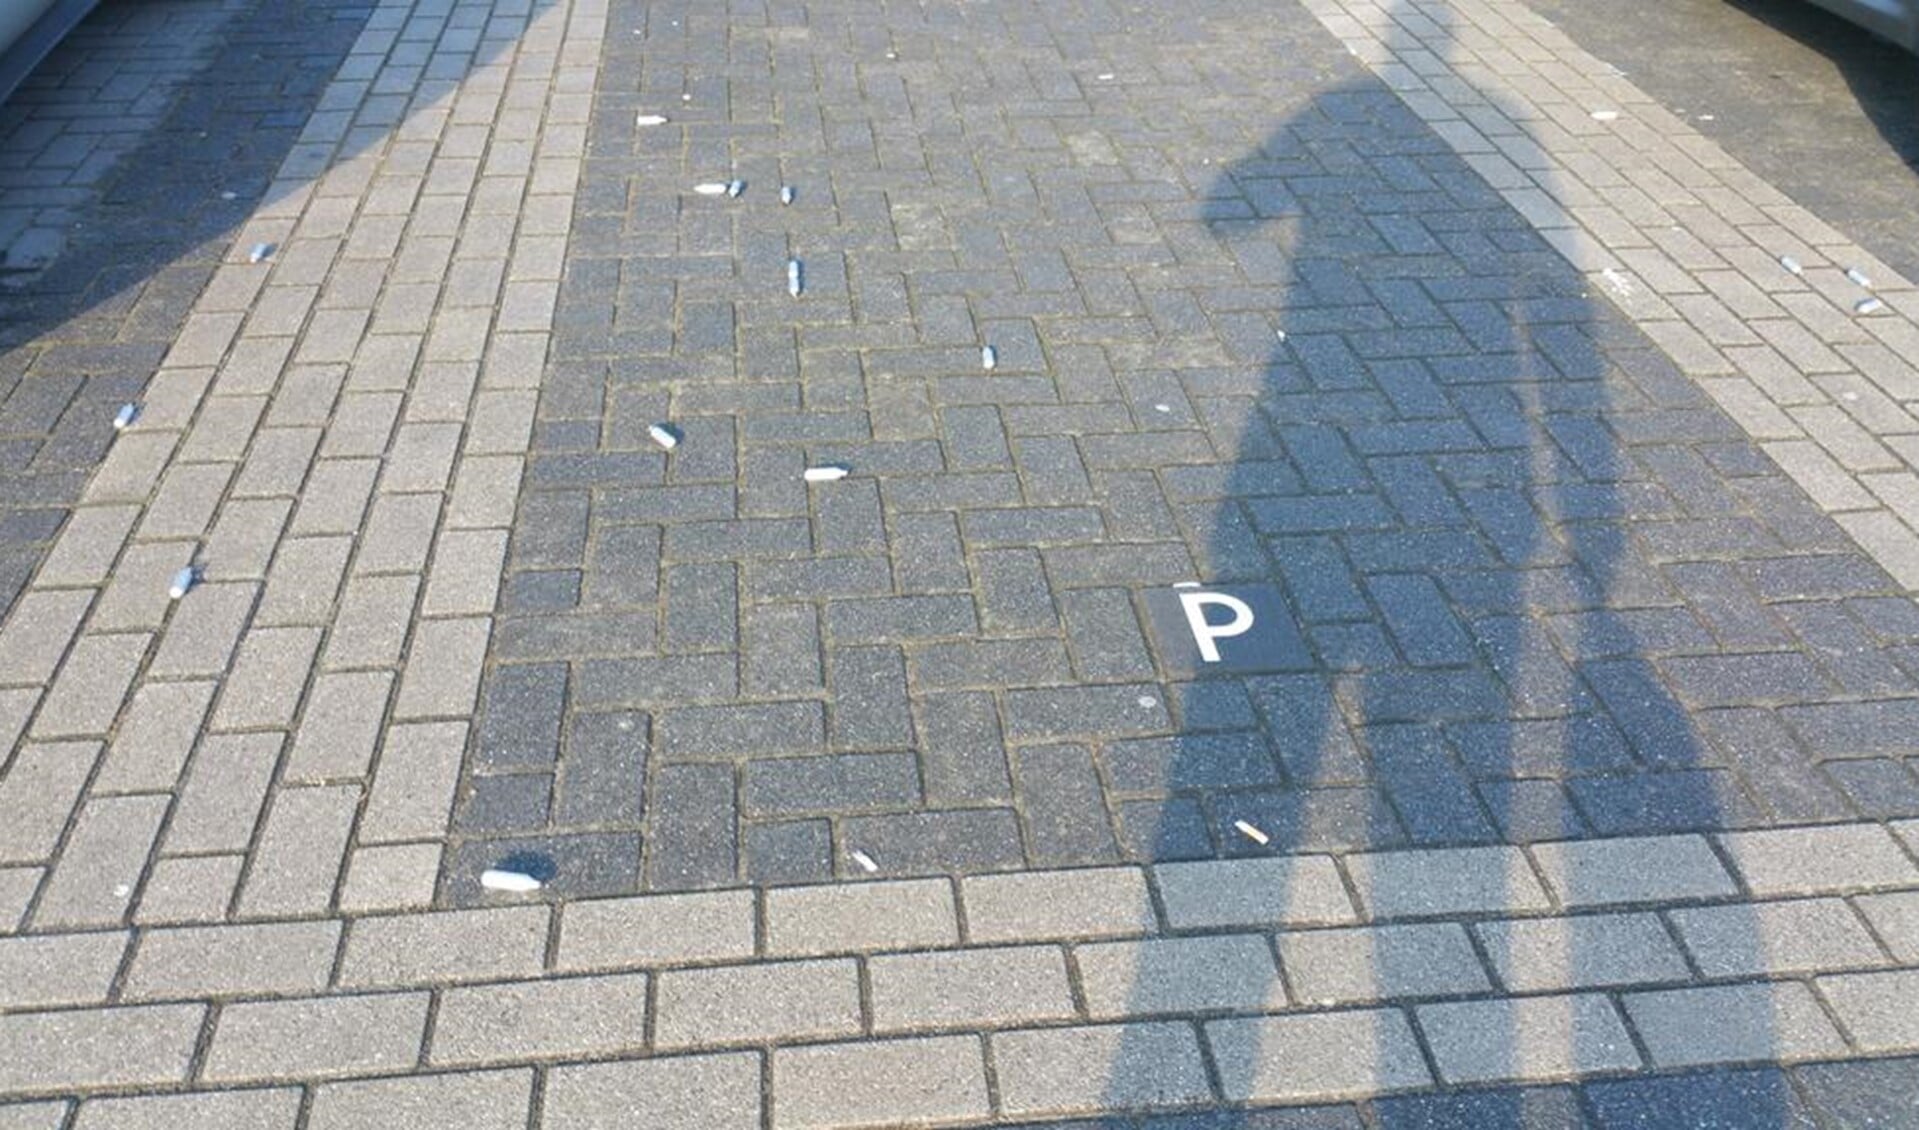 Op de parkeerplaats zijn veel patronen gevonden, mogelijk gaat het om lachgas. Foto: Twitter